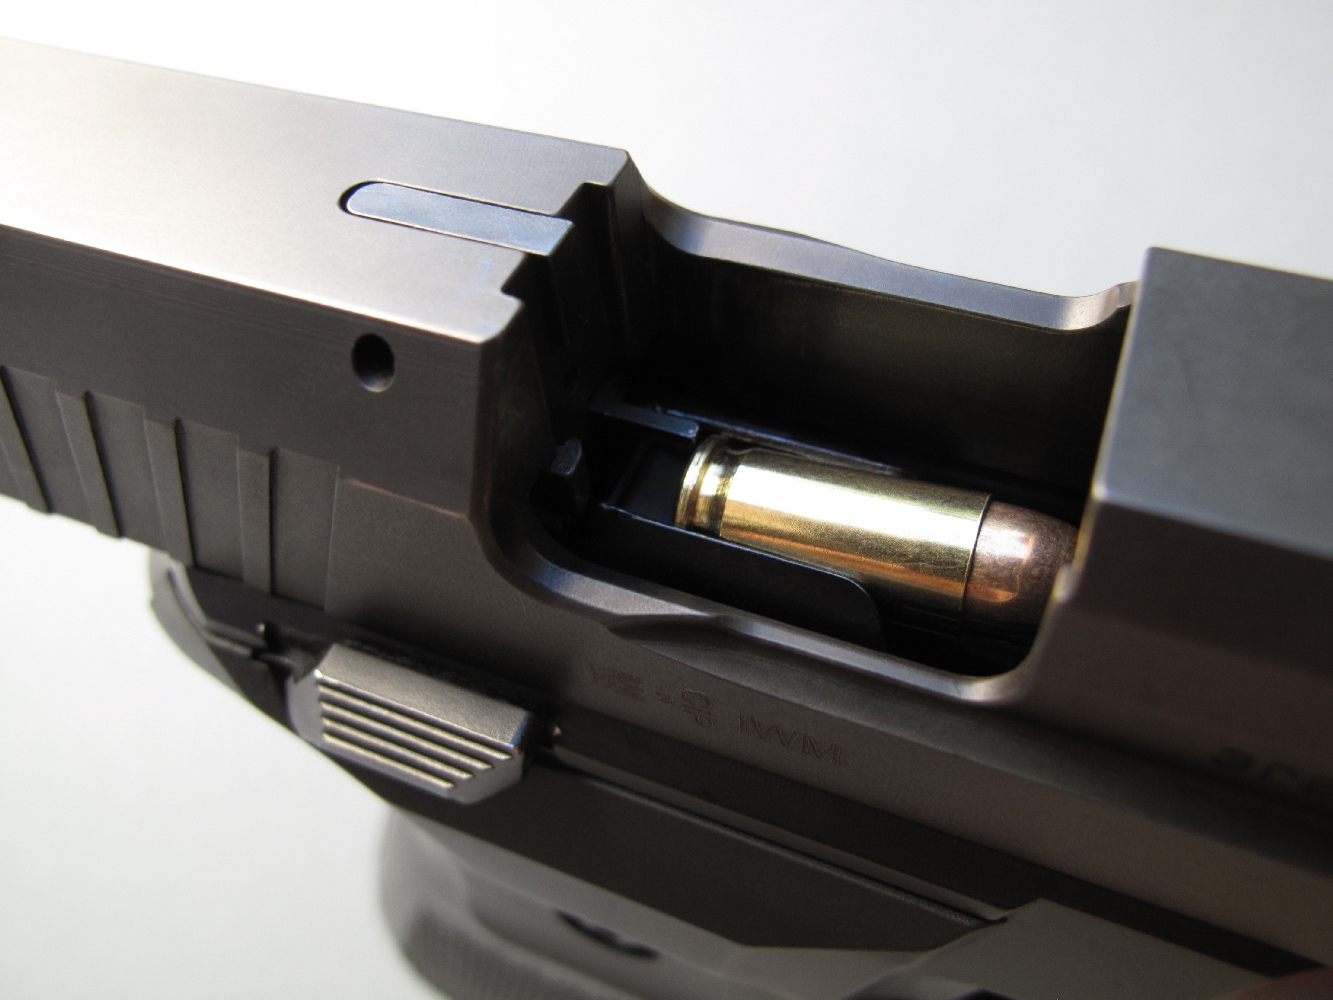 Initialement prévus pour le calibre 9 mm Parabellum, les chargeurs ont été adaptés au calibre 7,65 mm Browning au moyen d’une cale de 4 mm d’épaisseur insérée à l’arrière de la planchette élévatrice.